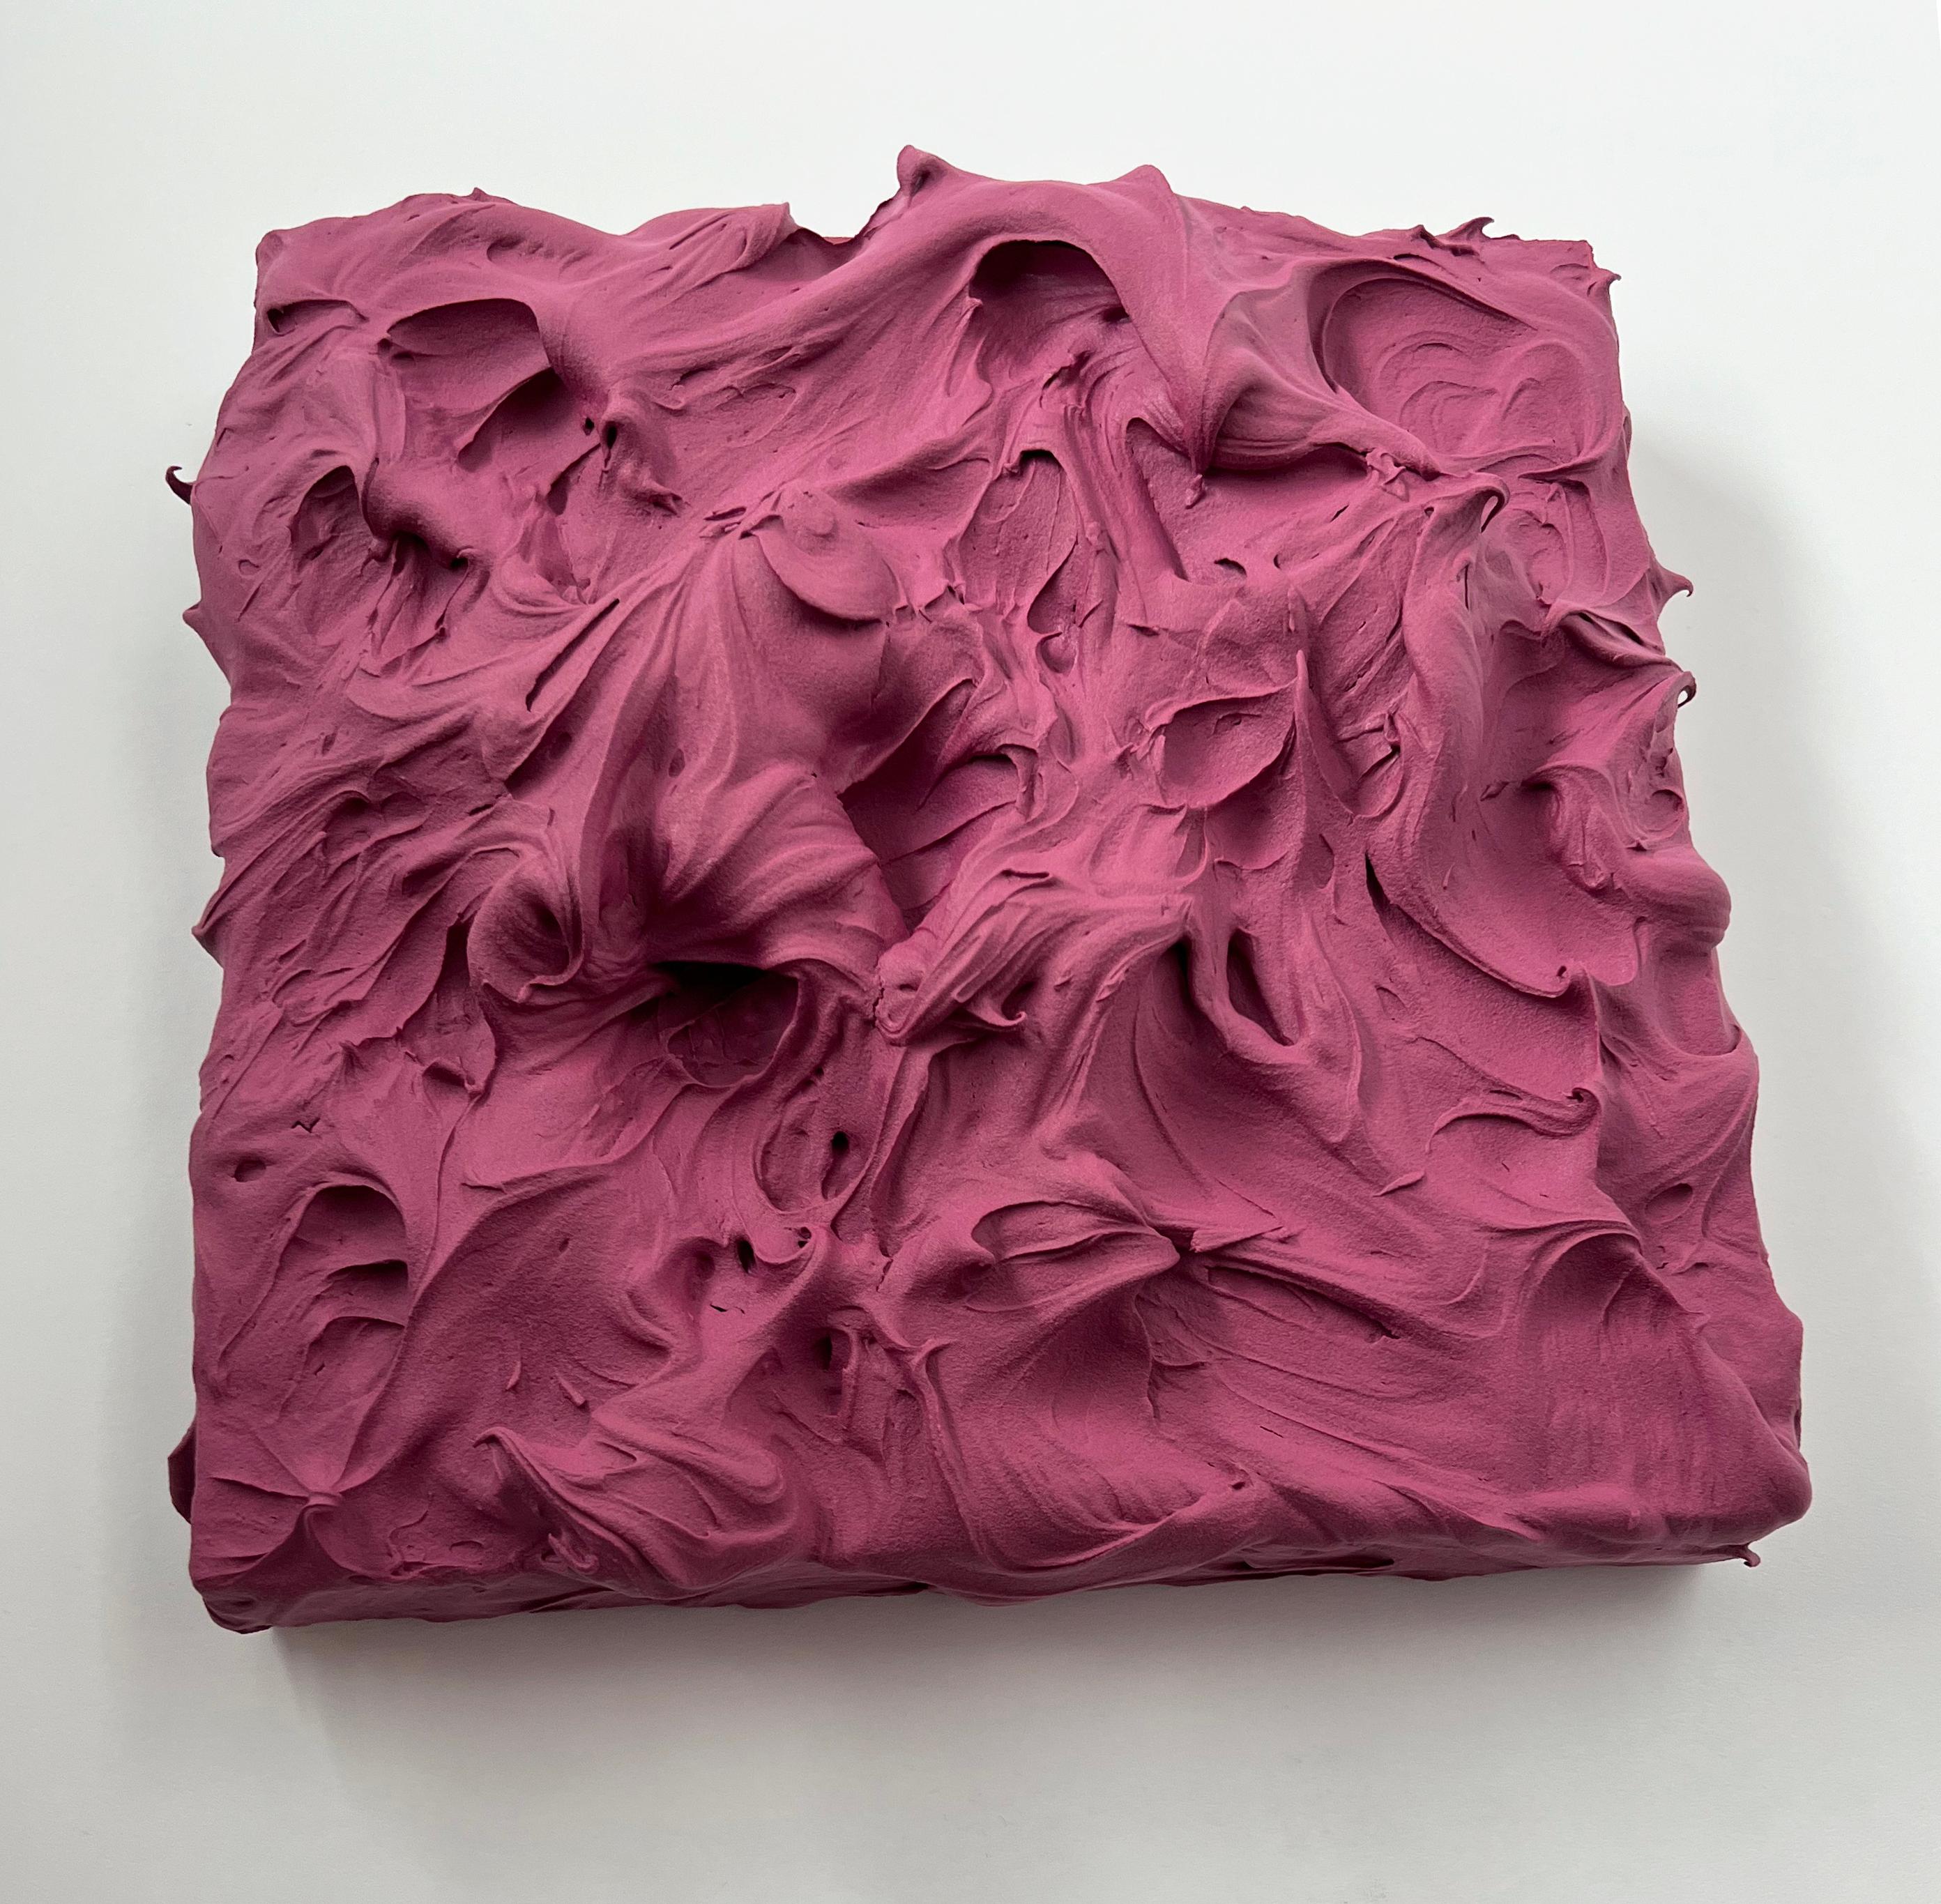 Mauve Excess (purple impasto thick painting monochrome pop art square design) For Sale 1